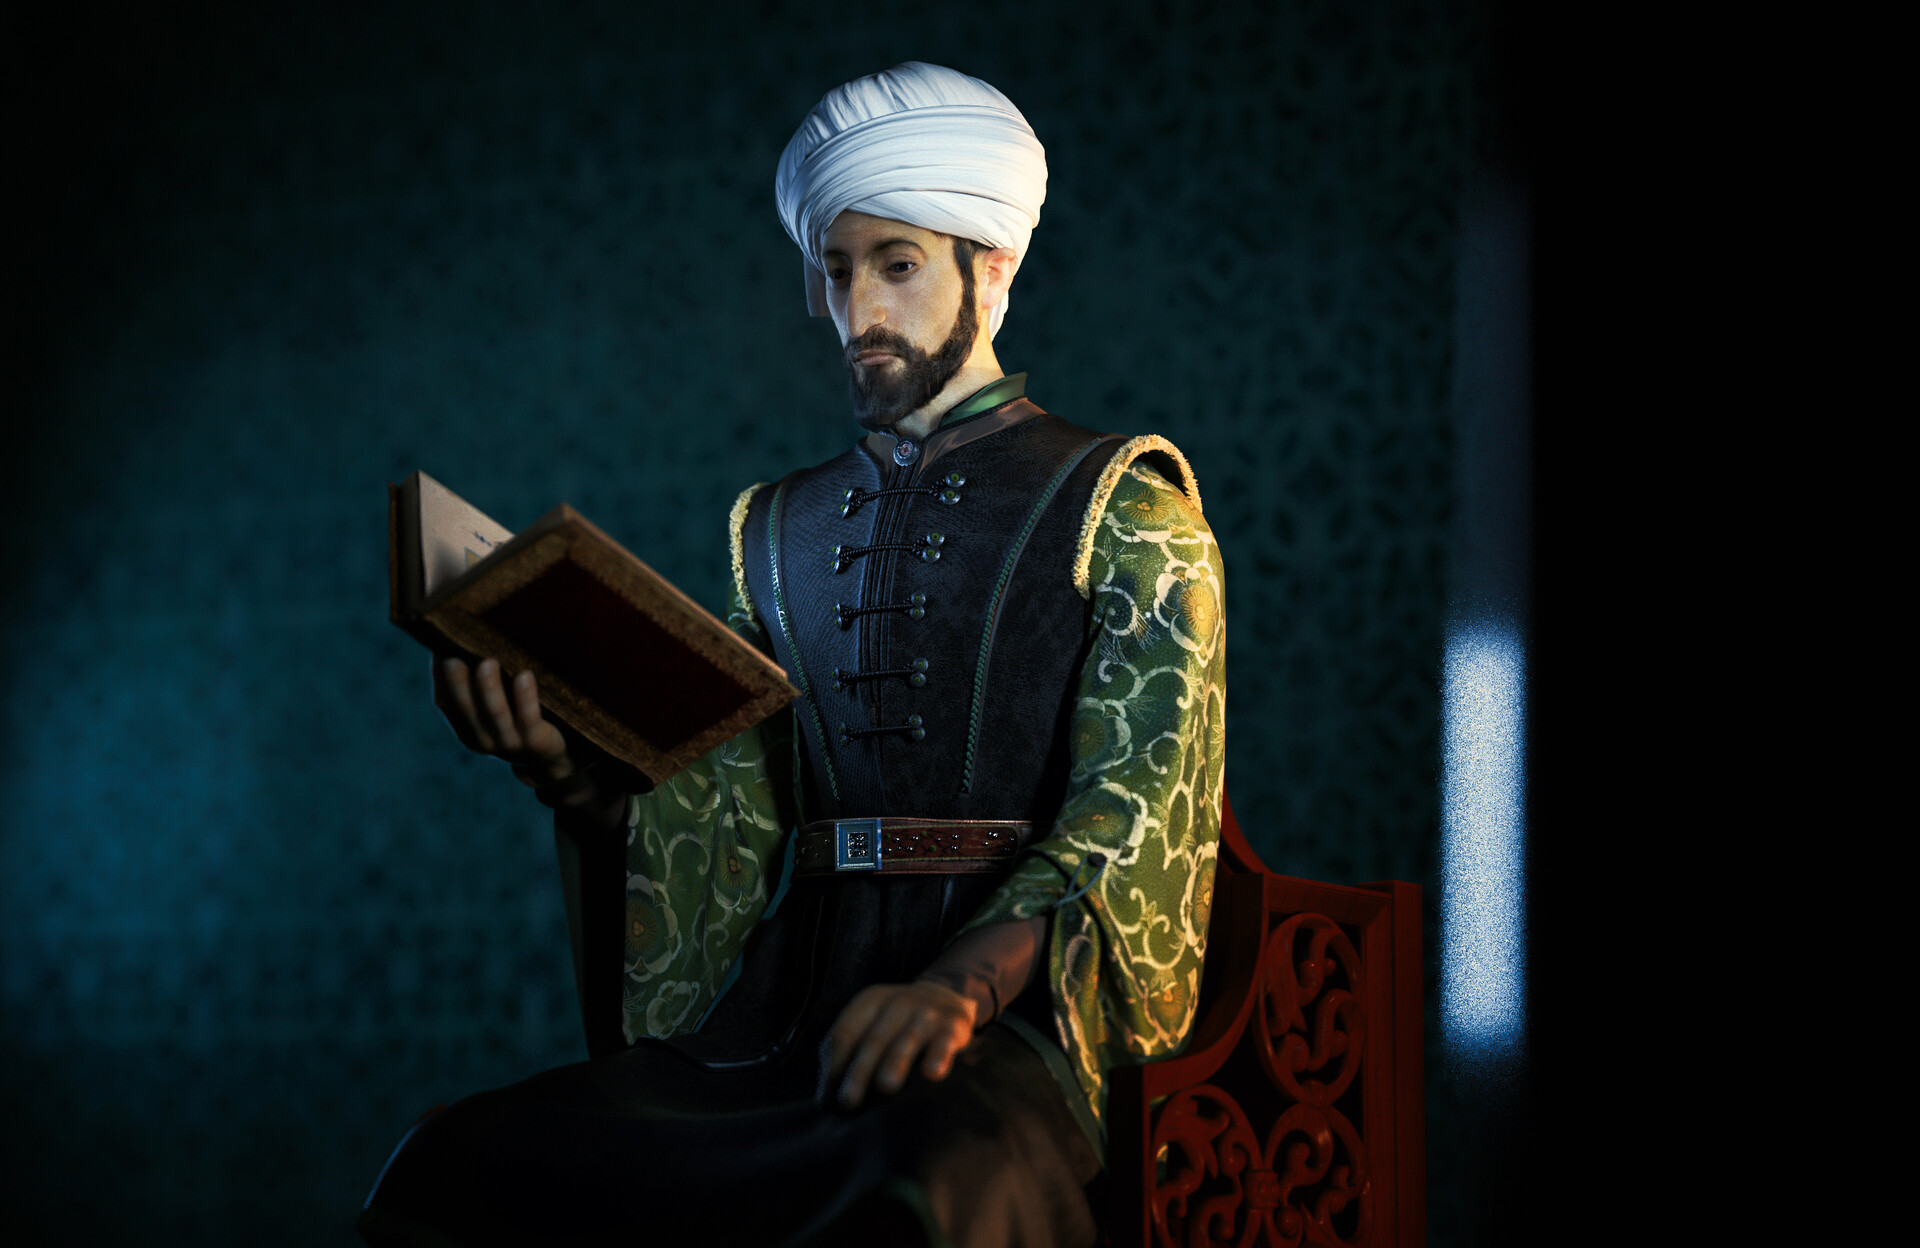 Sultan Mehmet II Sultan Mehmet